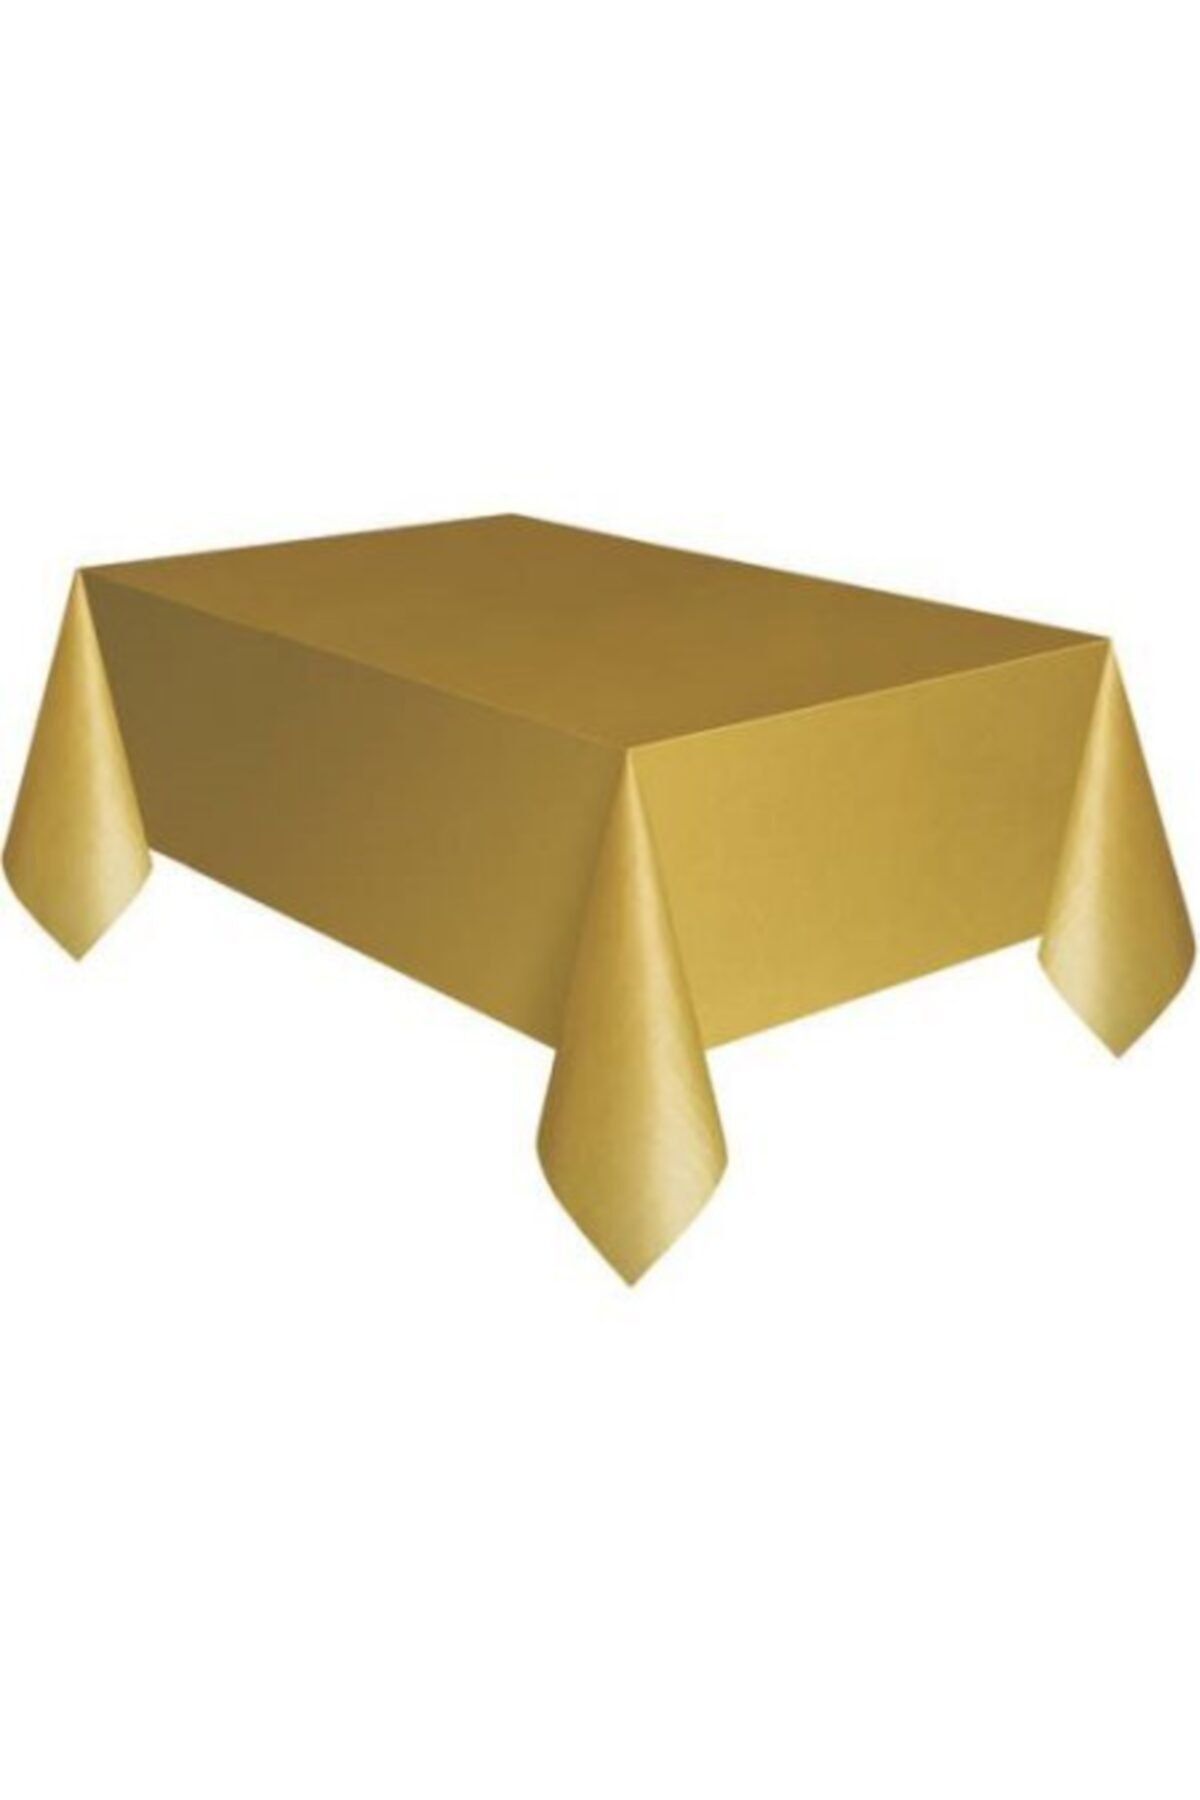 Plastik Masa Örtüsü Altın Renk 137x270 cm_0